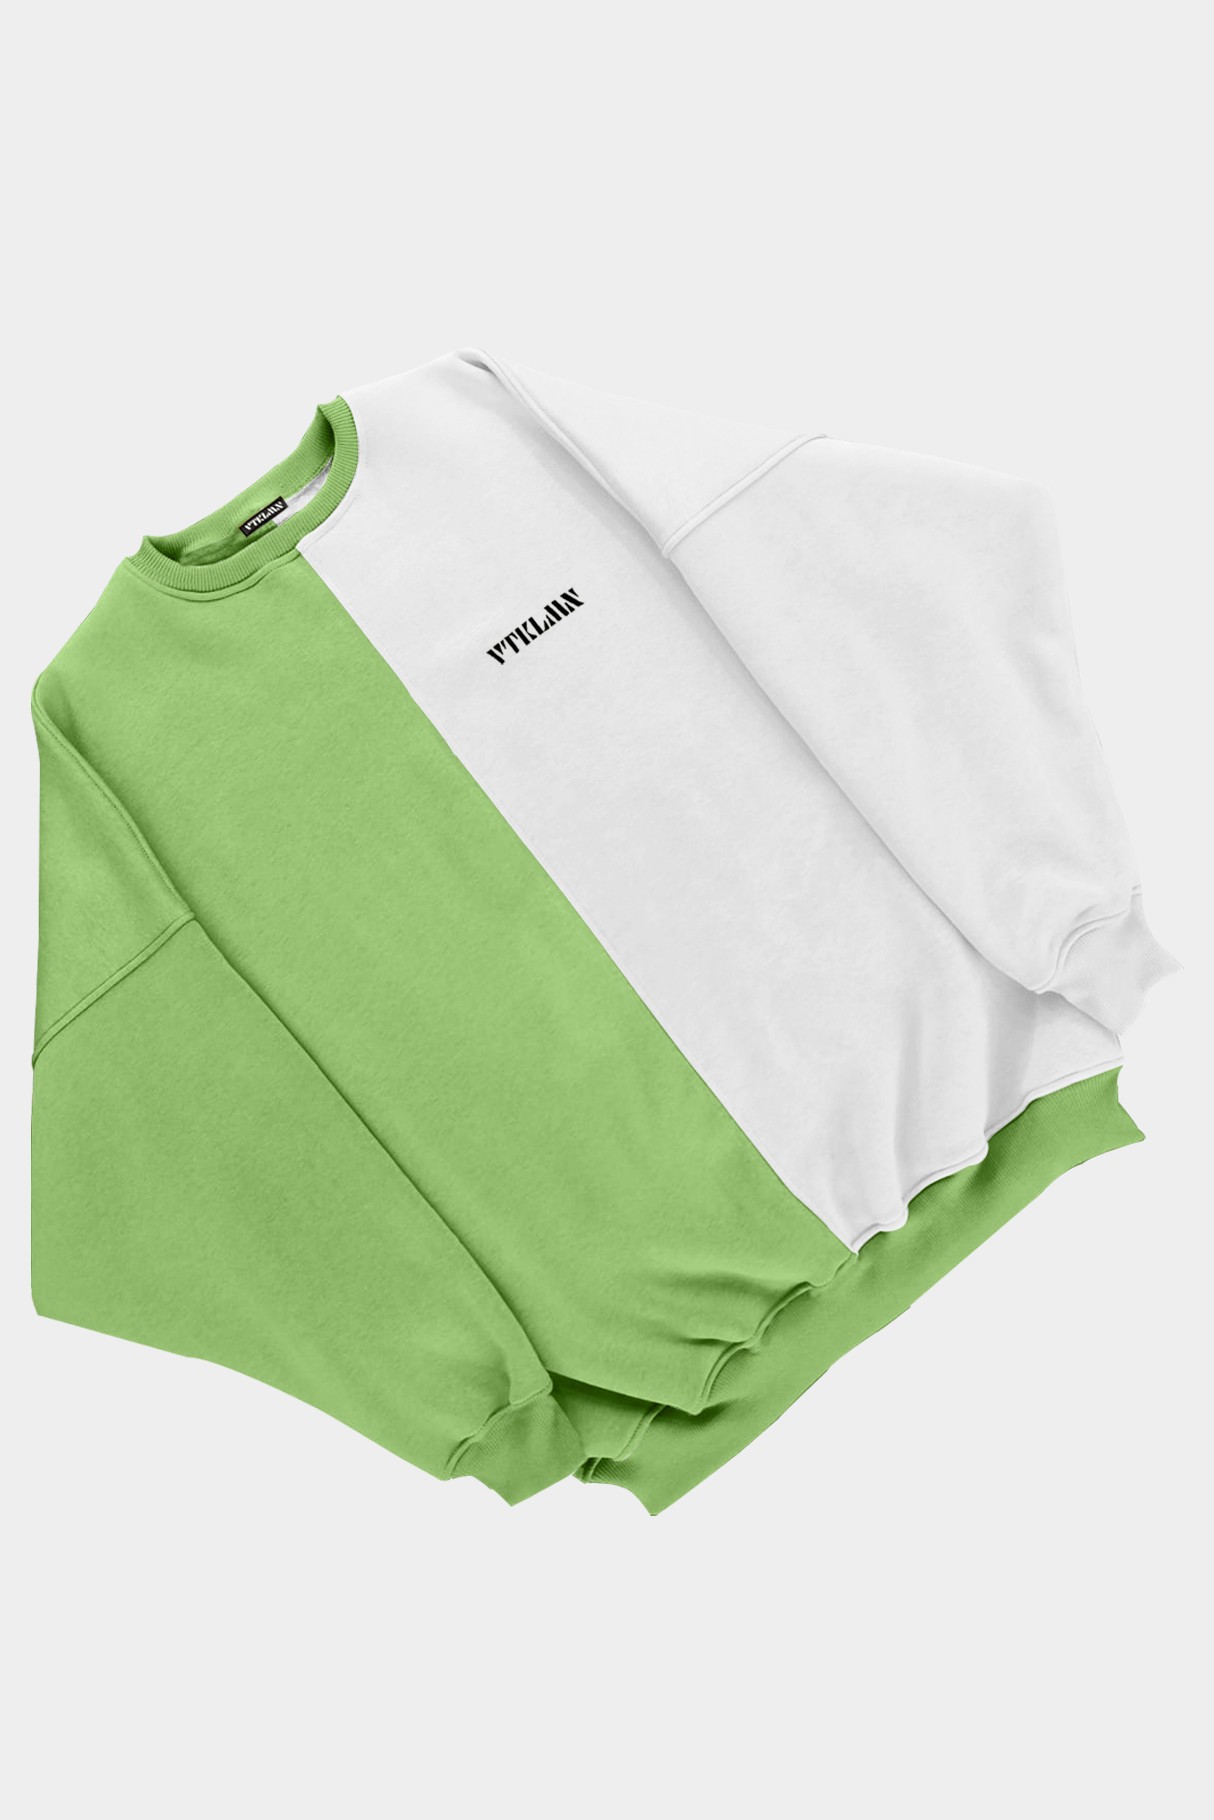  Kadın Erkek Renkli Sweatshirt - Yeşil Beyaz